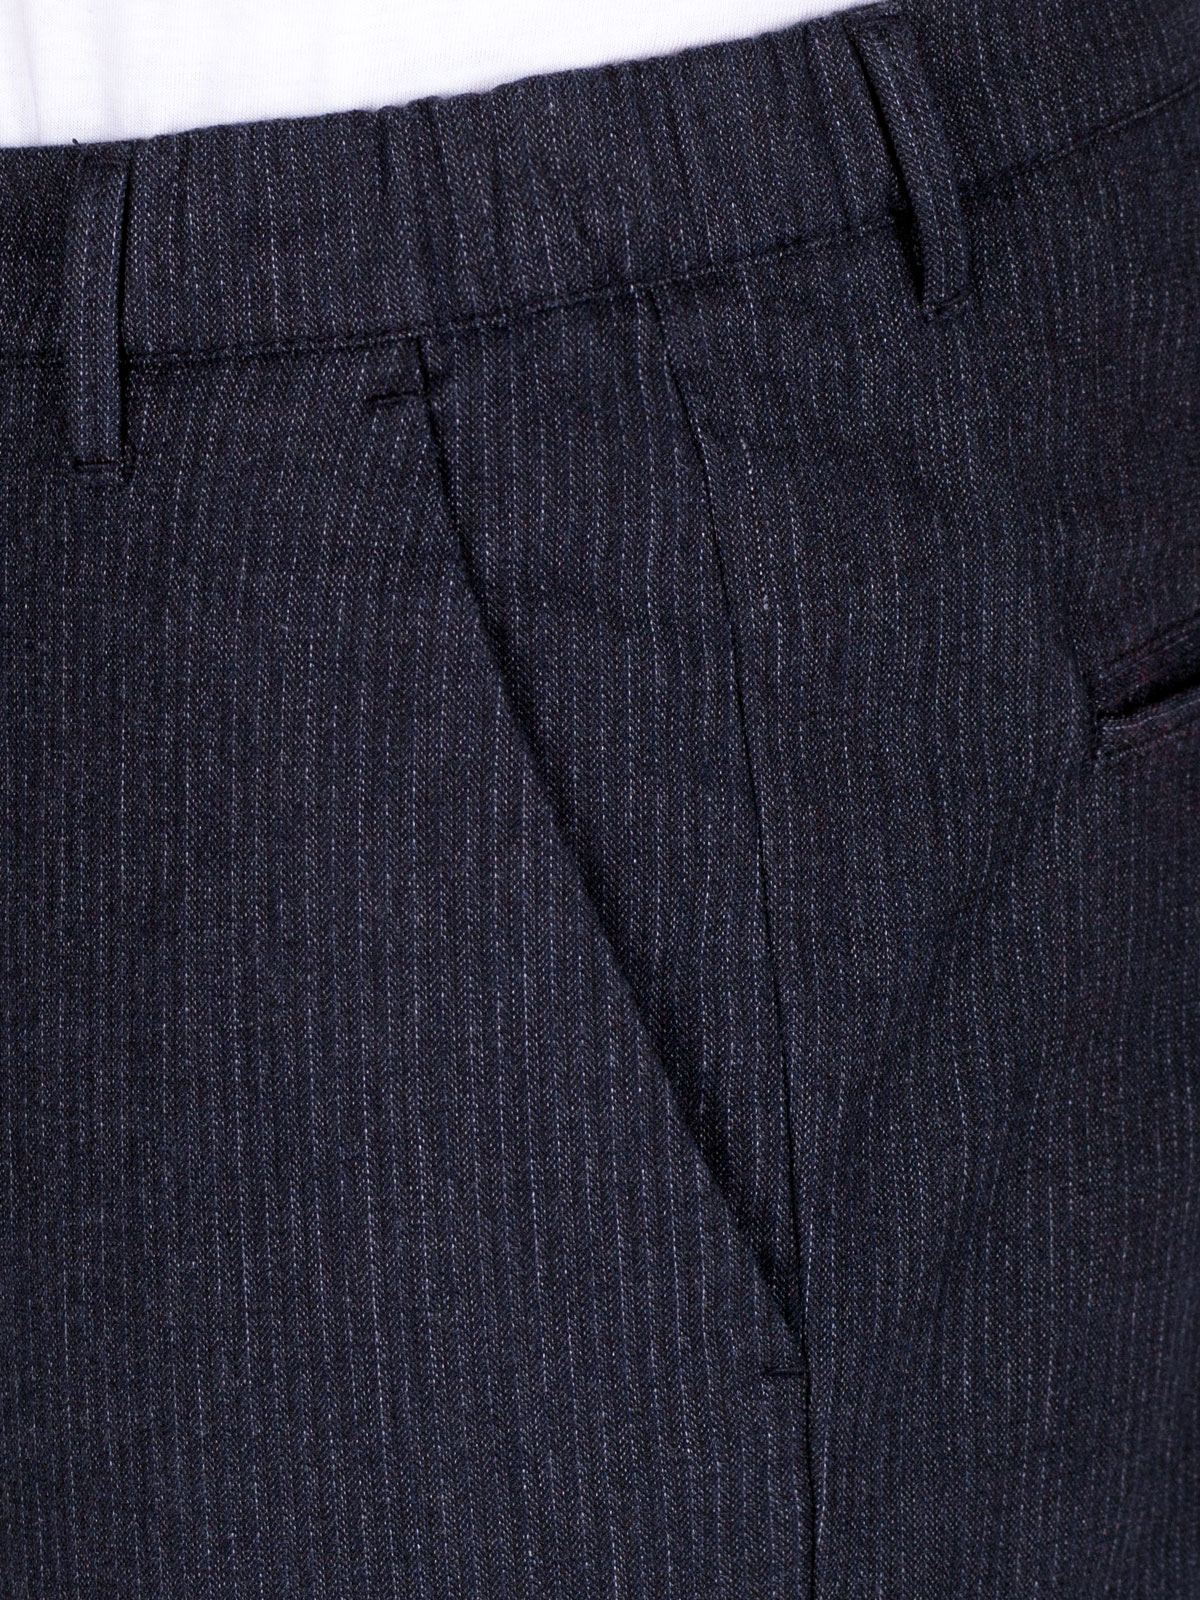 Μπλε ριγέ παντελόνι με κορδόνια - 60283 € 66.93 img2